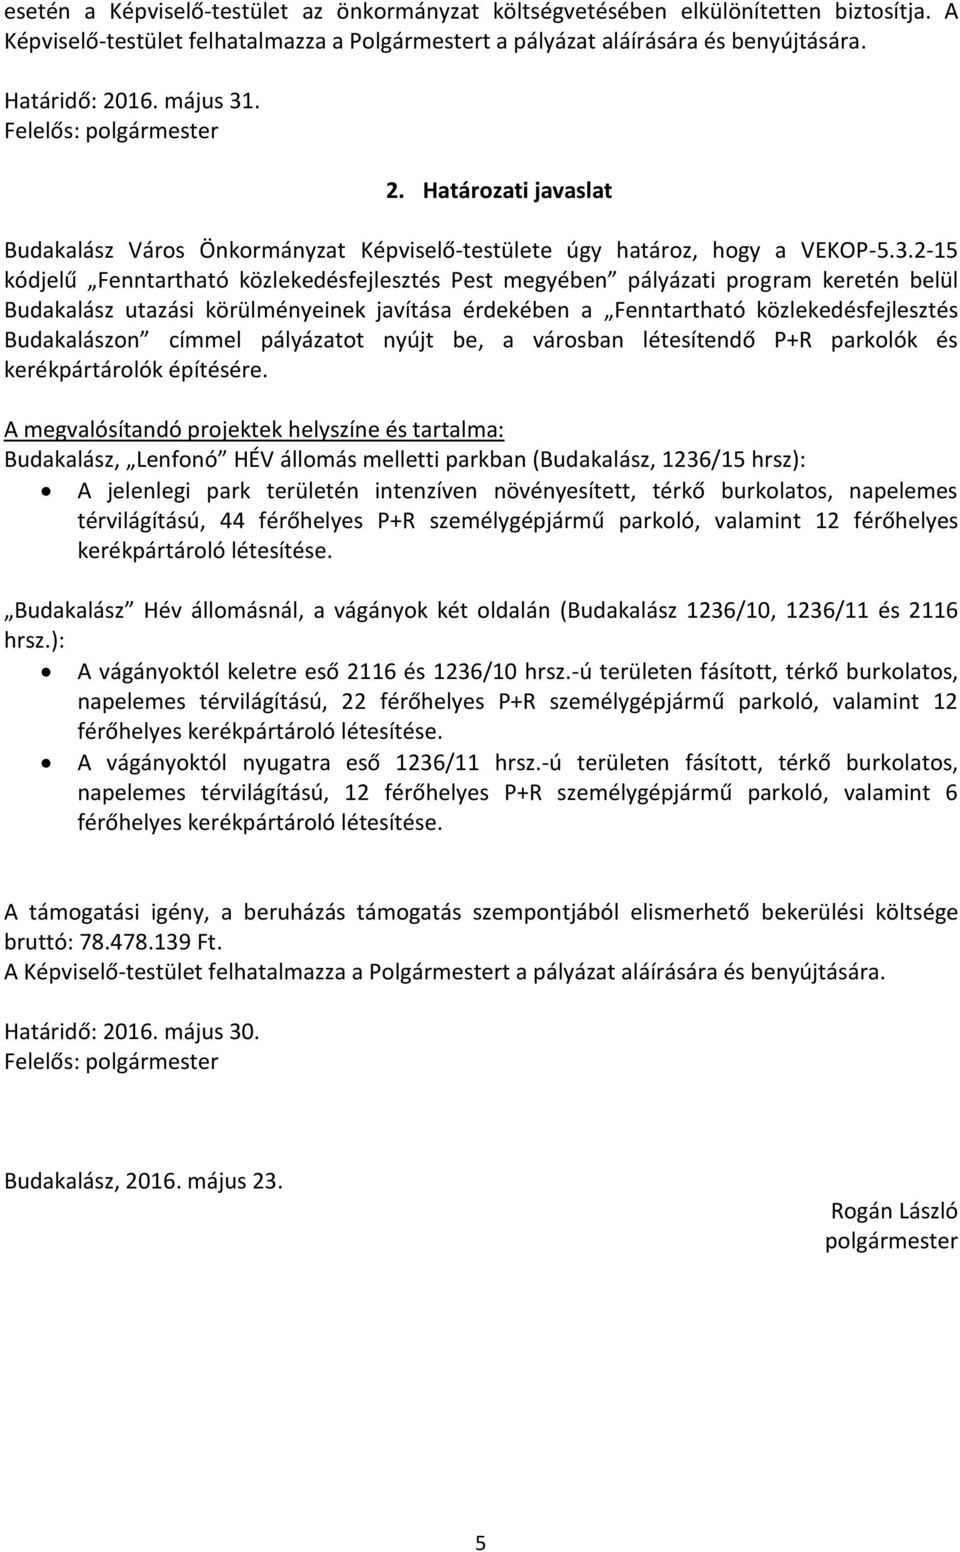 . Felelős: polgármester 2. Határozati javaslat Budakalász Város Önkormányzat Képviselő-testülete úgy határoz, hogy a VEKOP-5.3.